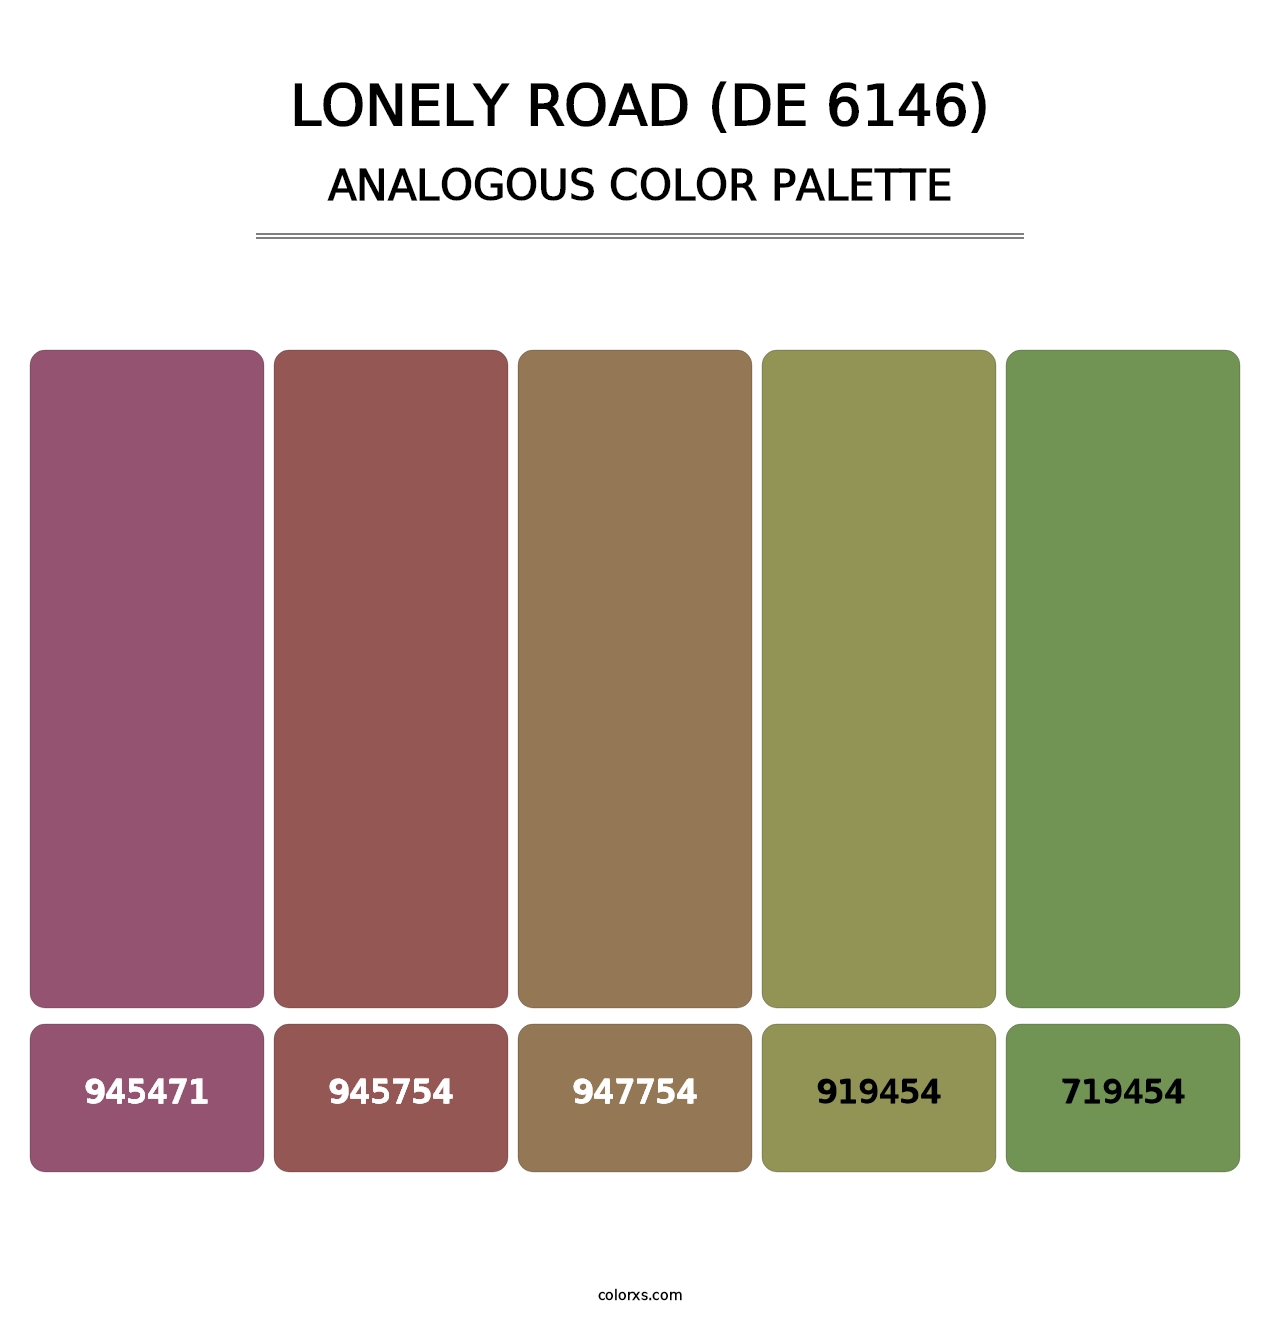 Lonely Road (DE 6146) - Analogous Color Palette